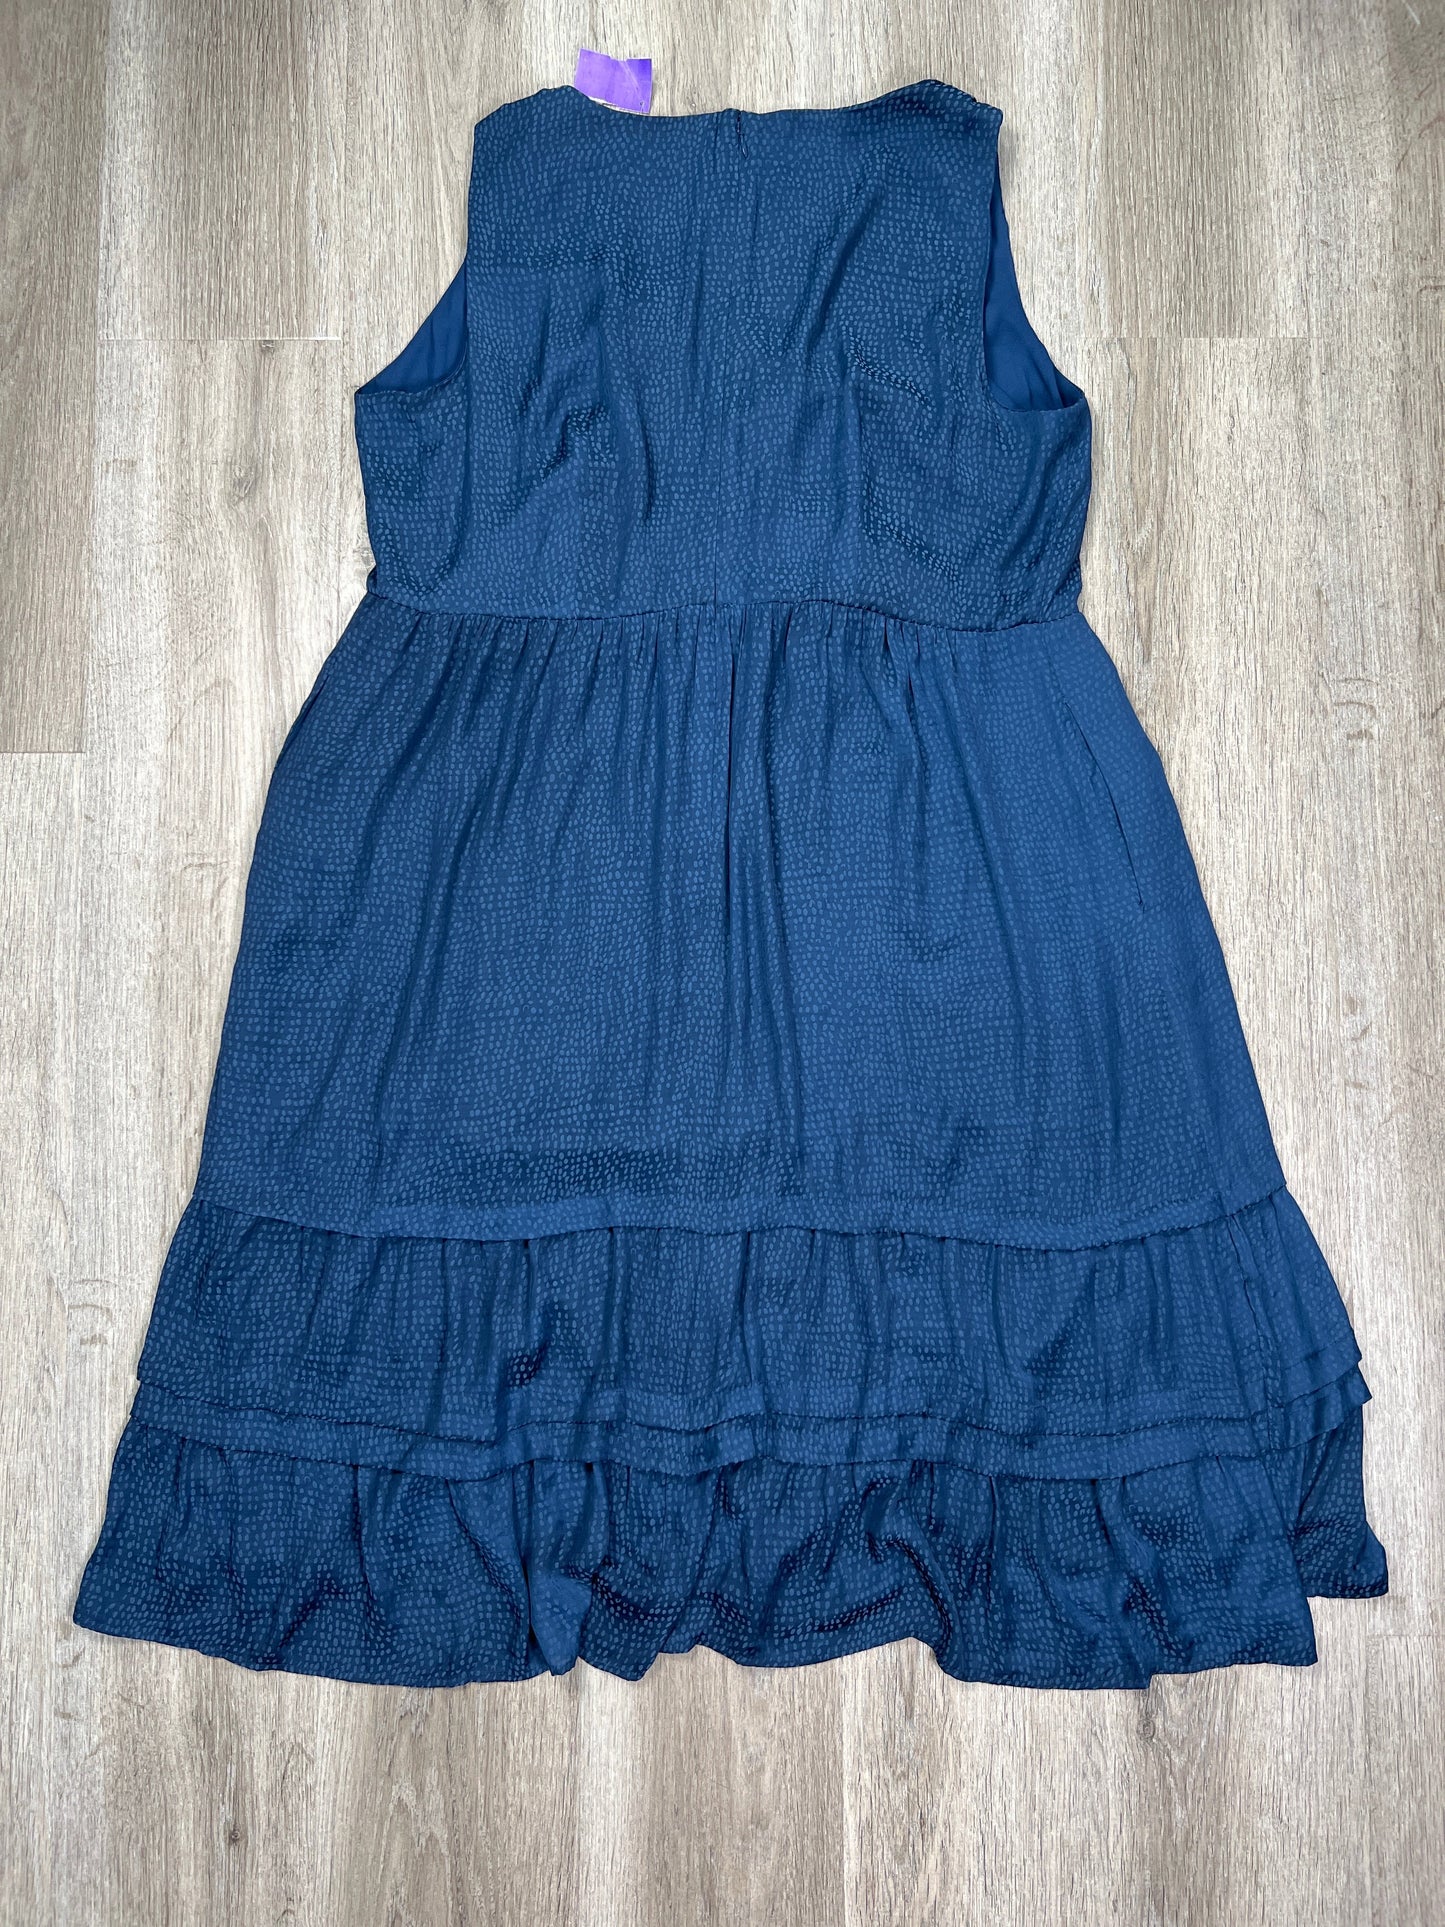 Blue Dress Casual Midi Loft, Size 1x